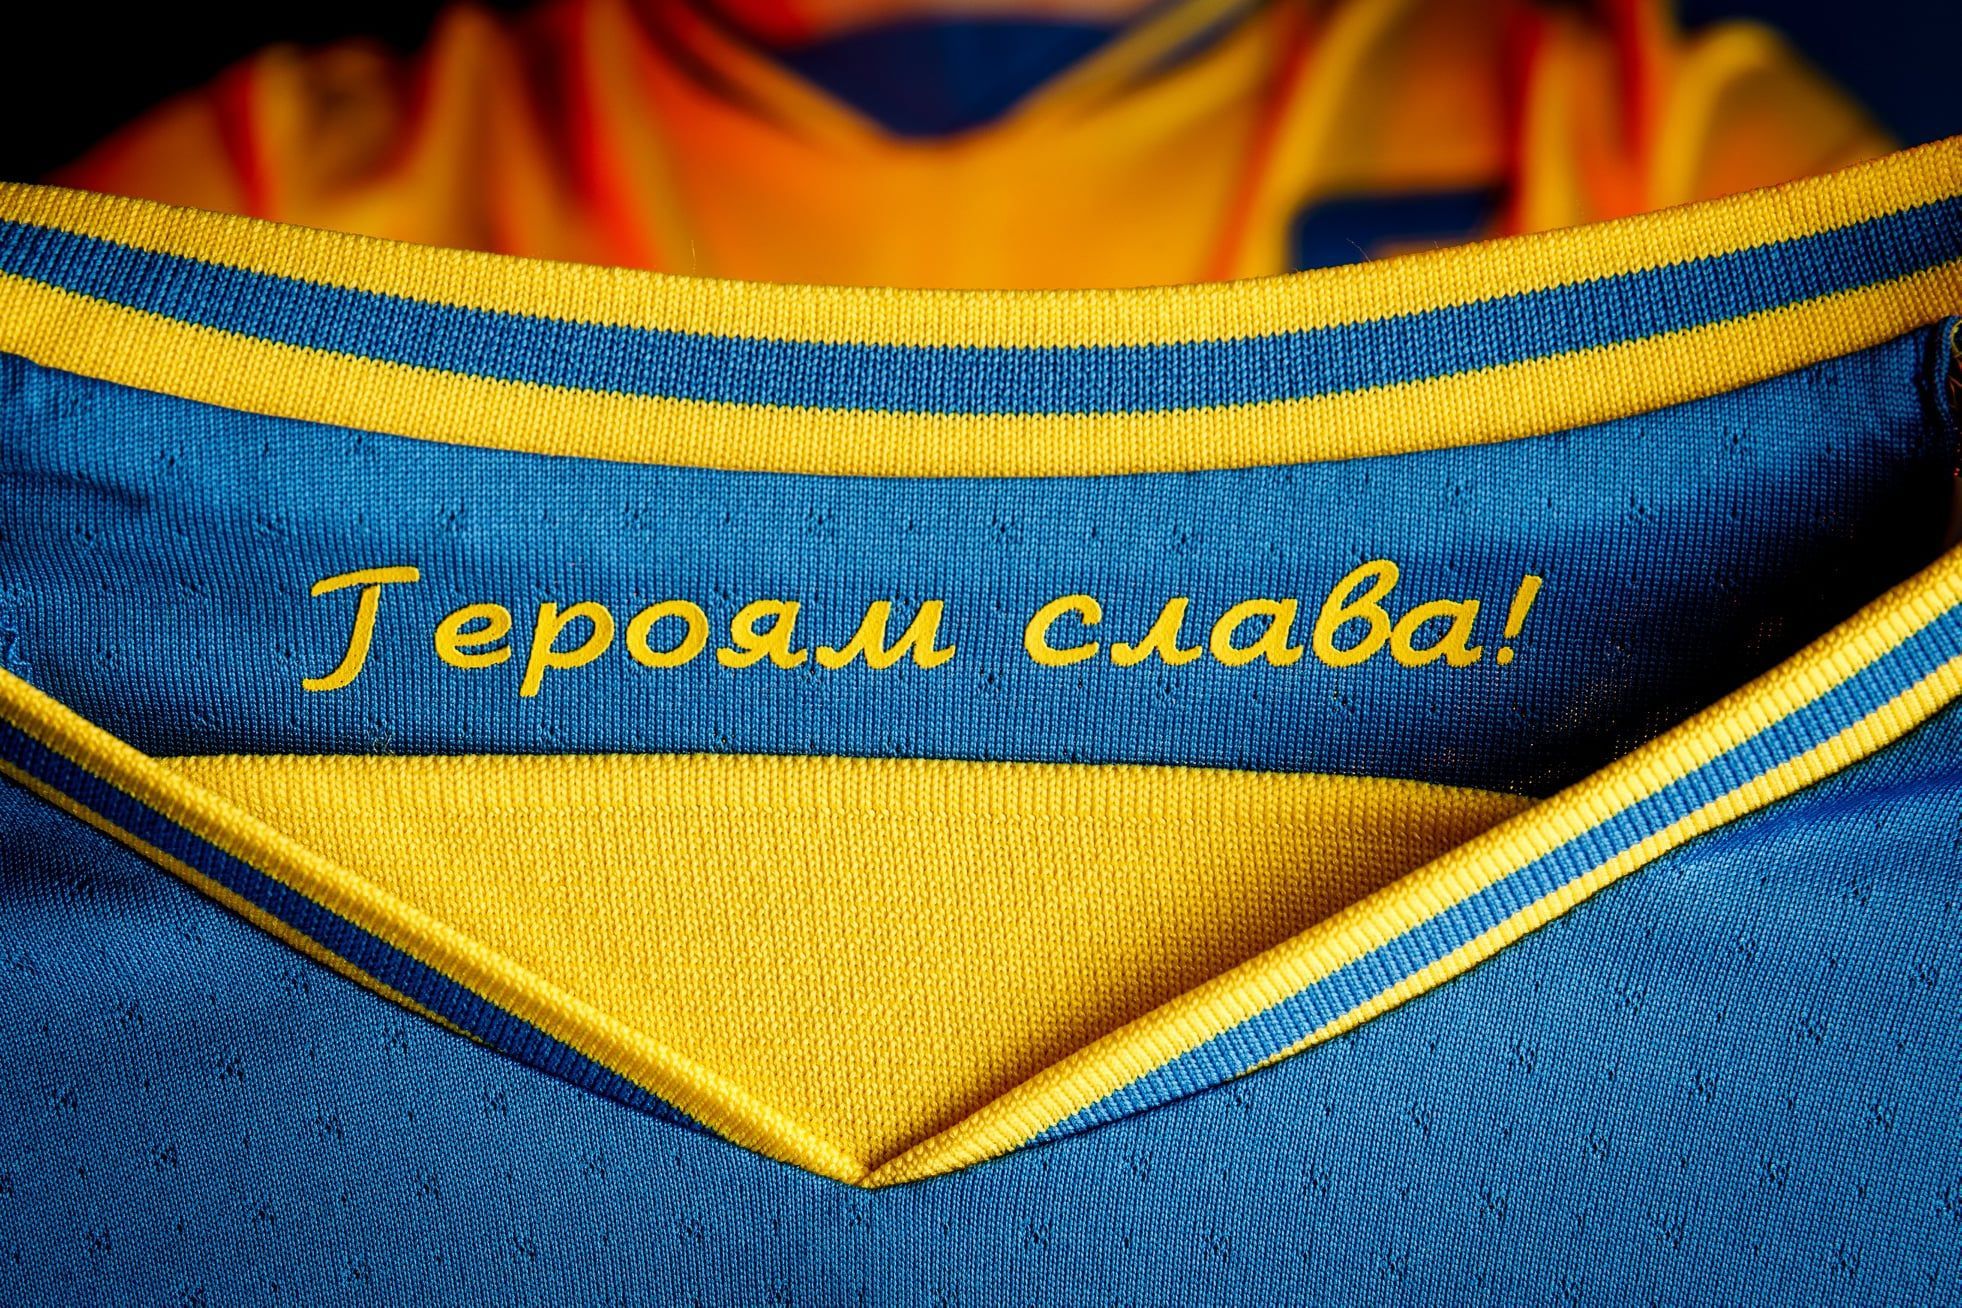 В России за ношение футболки сборной Украины могут посадить - детали